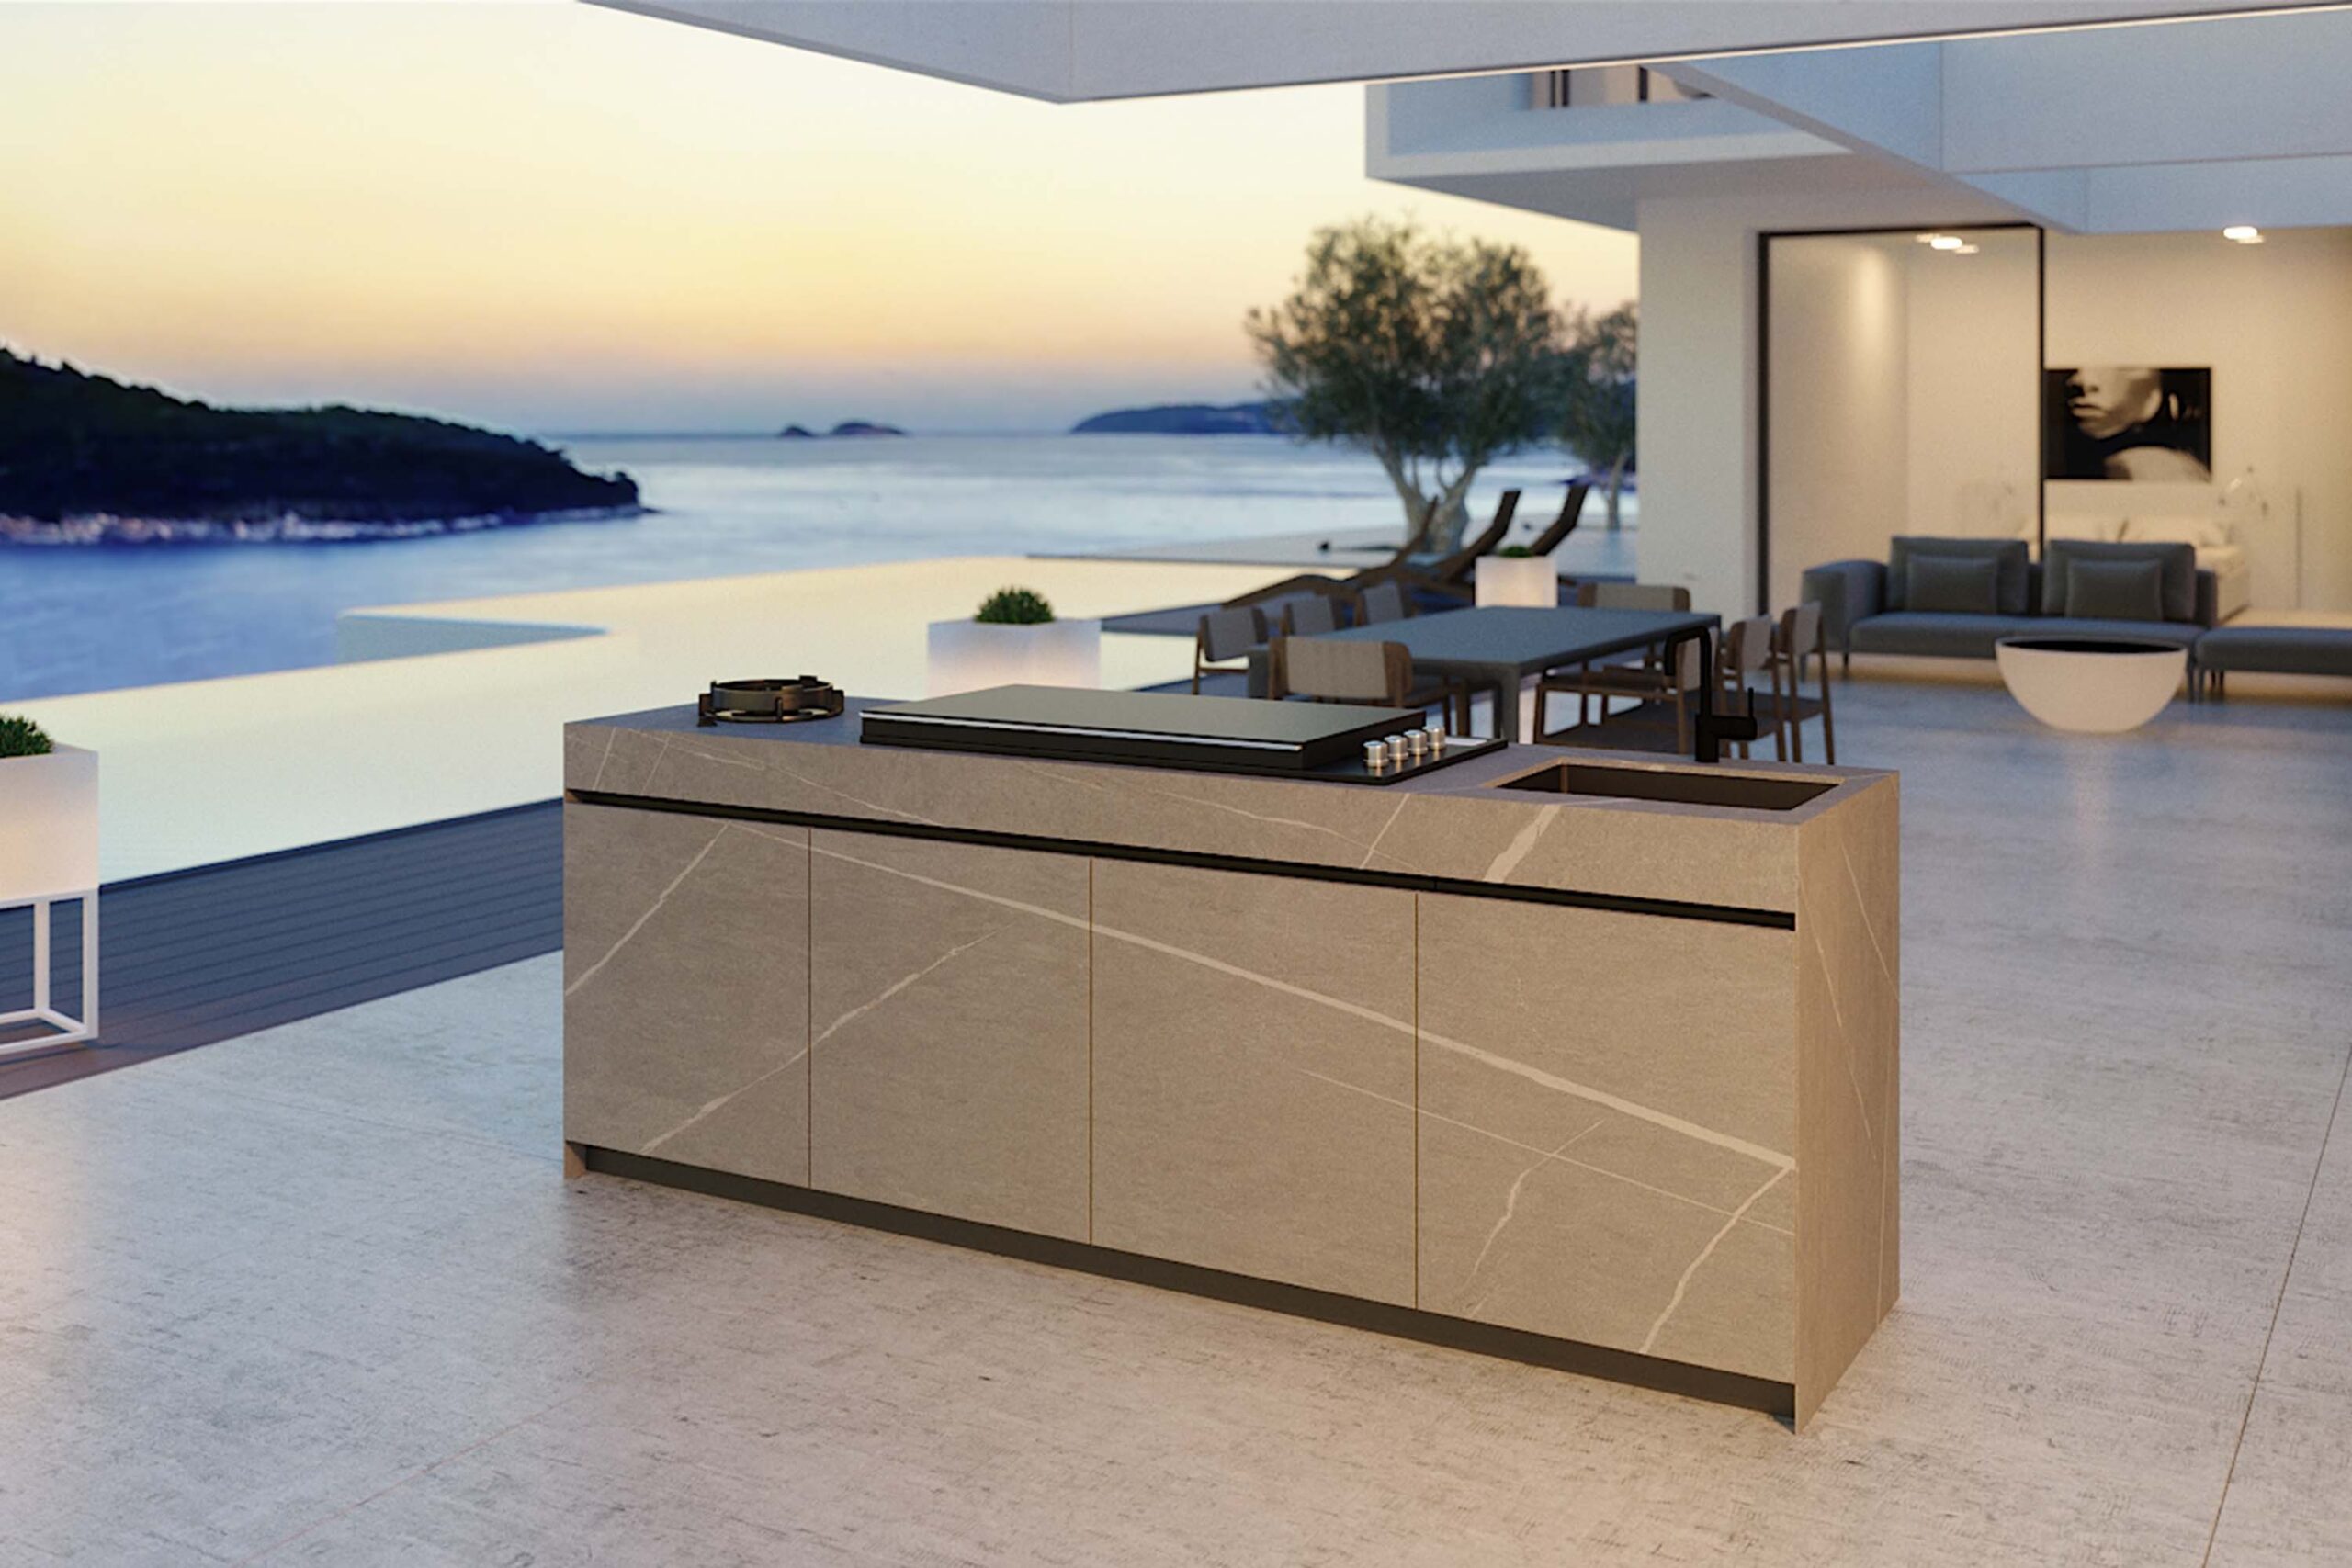 Luxury ceramic modern outdoor kitchen island. Designed and installed by Krieder UK.